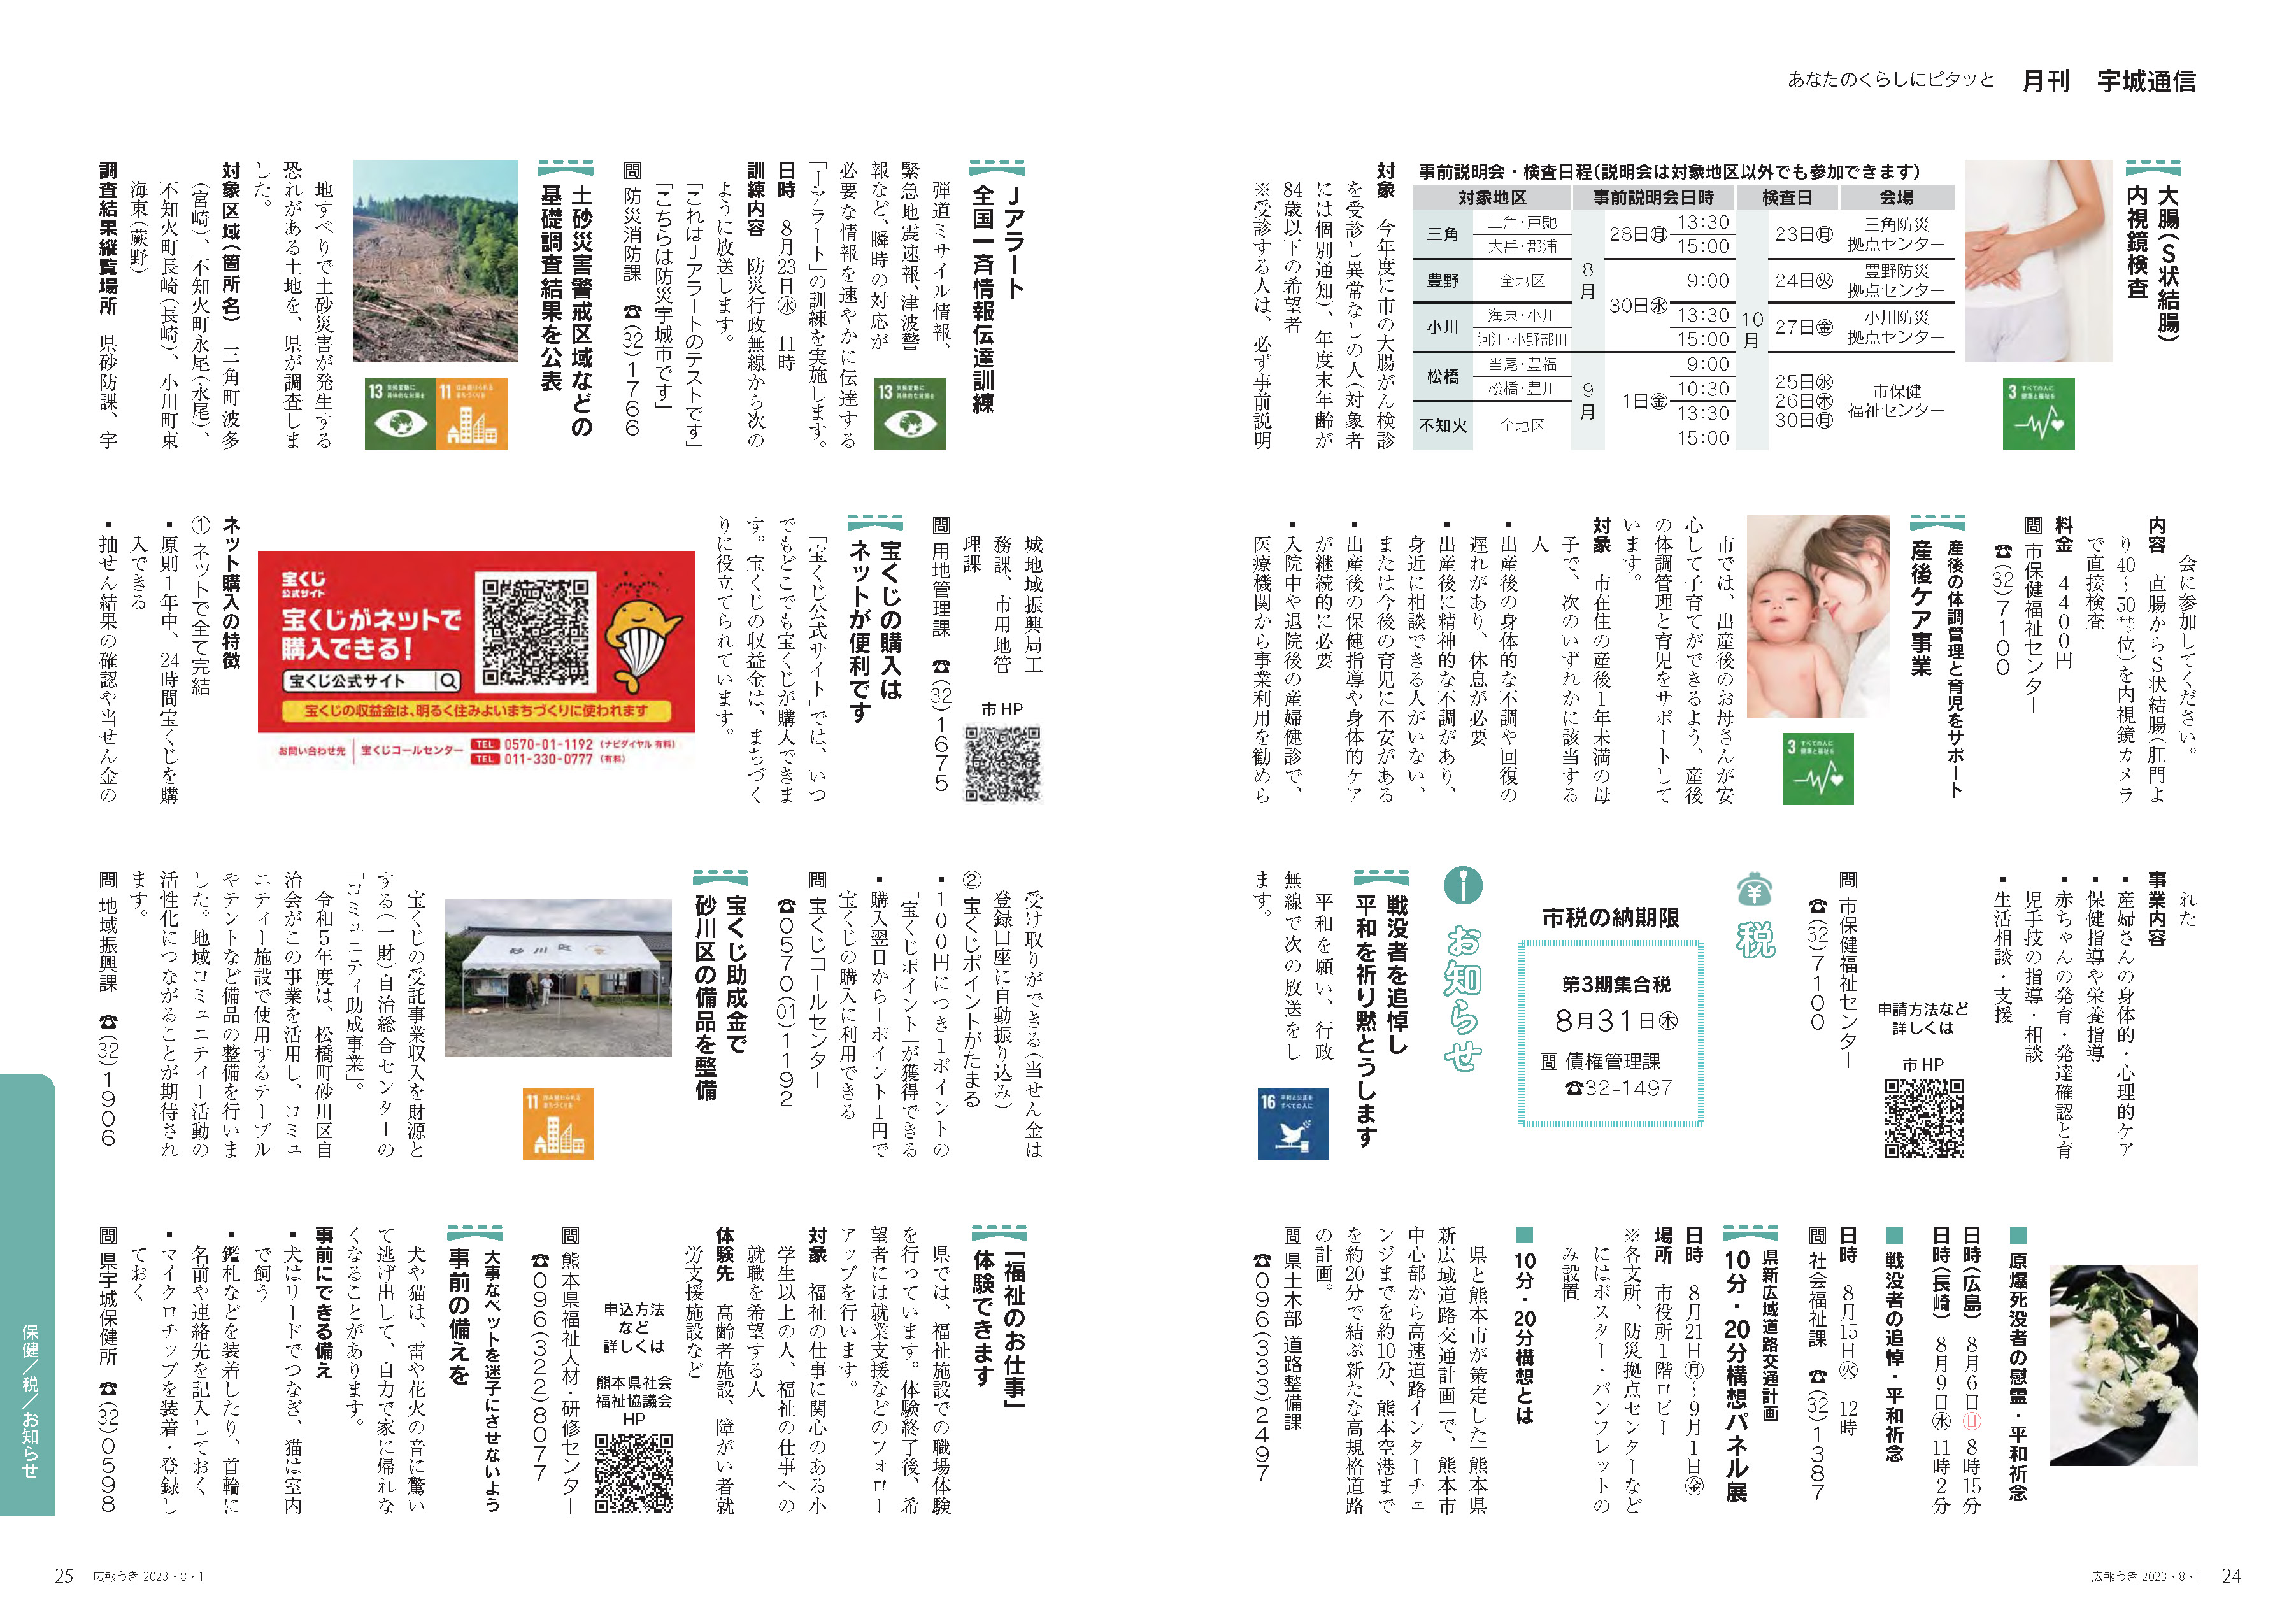 P24、P25 あなたのくらしにピタッと 月刊 宇城通信のページ画像、詳細はPDFファイルを参照ください。